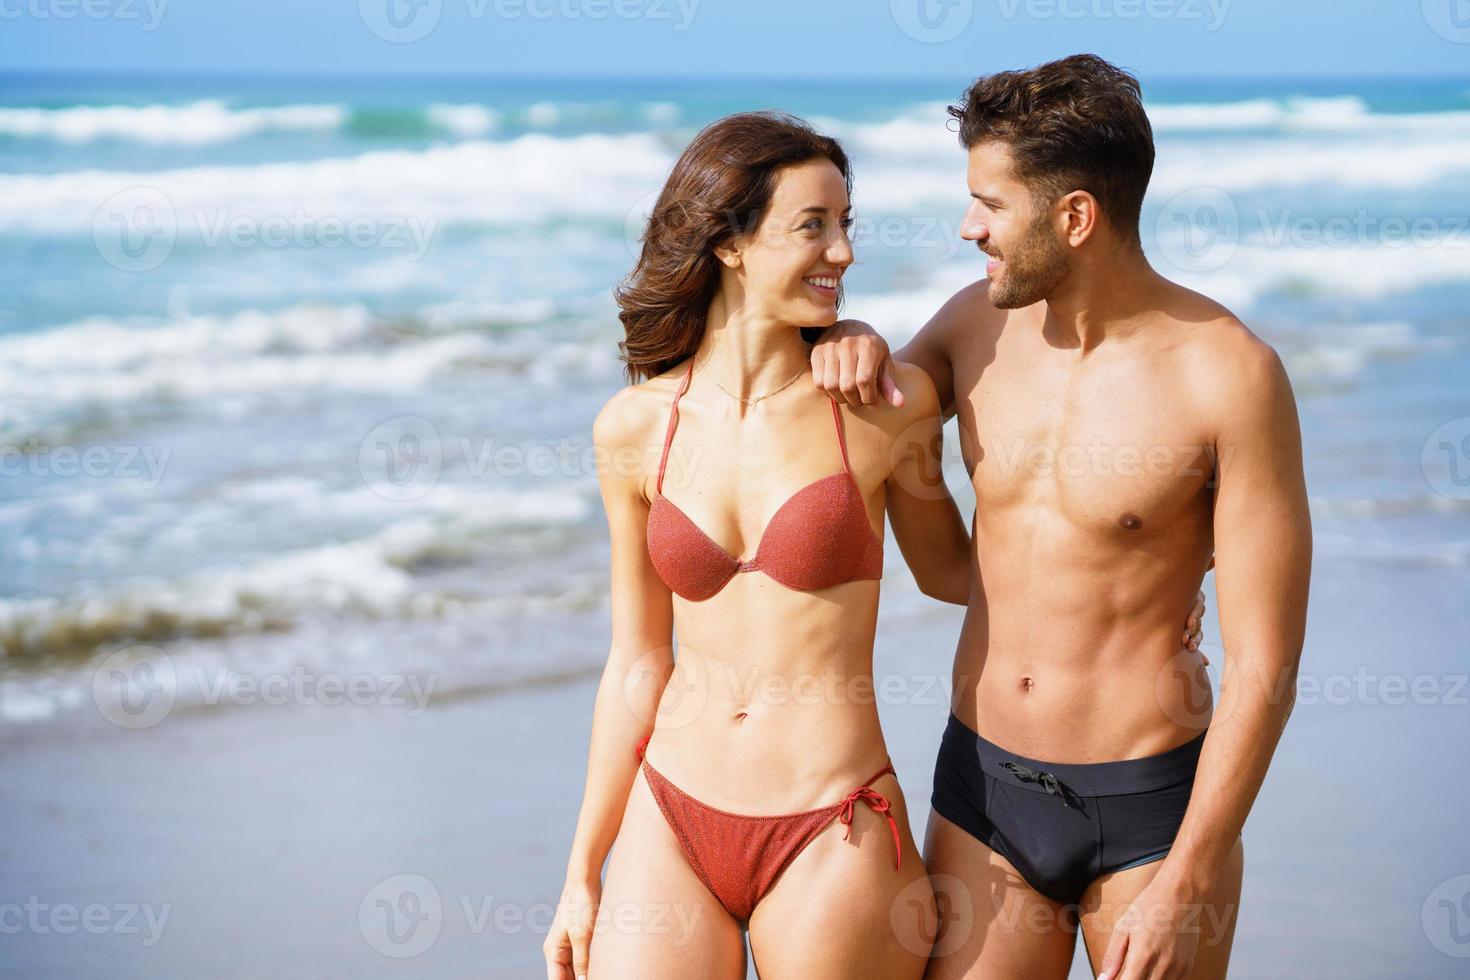 jovem casal de lindos corpos atléticos caminhando juntos na praia foto